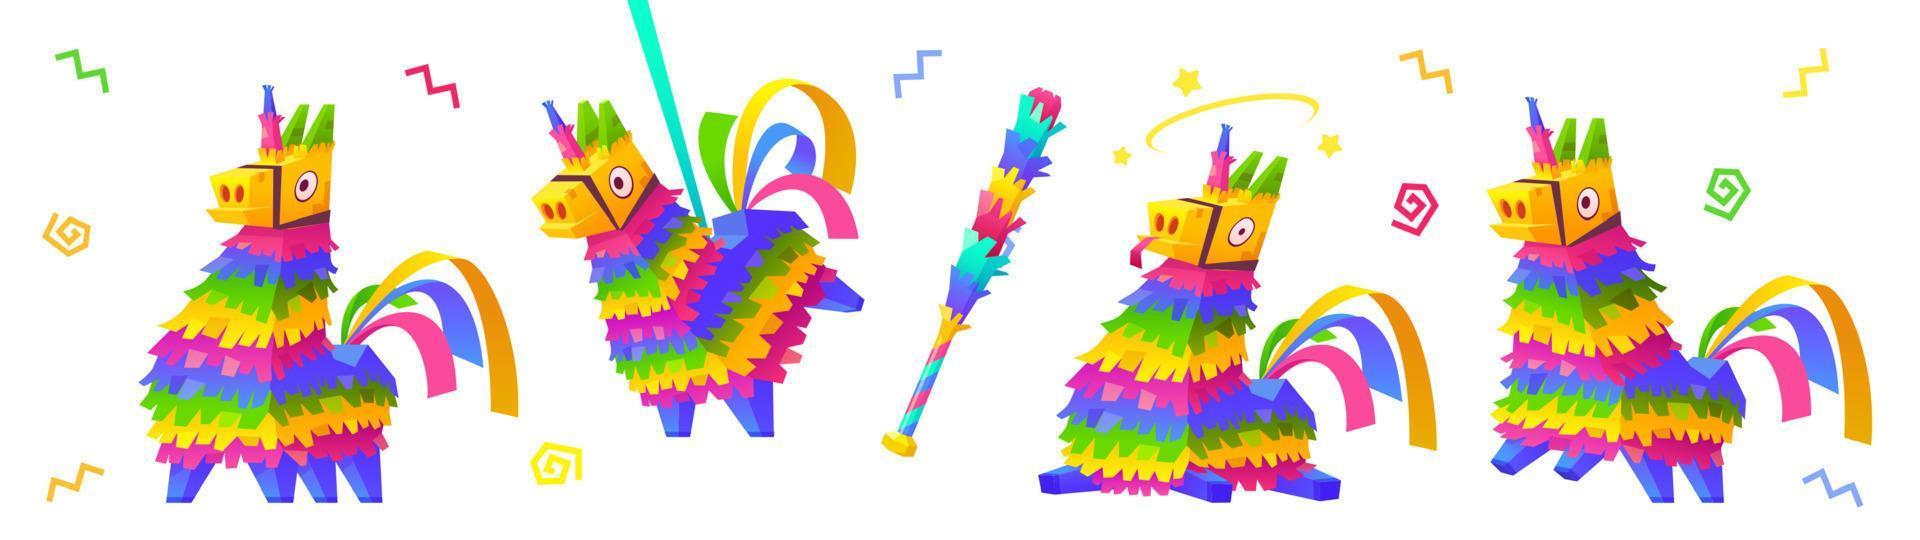 cartone animato impostato di arcobaleno unicorno pinata e pipistrello vettore